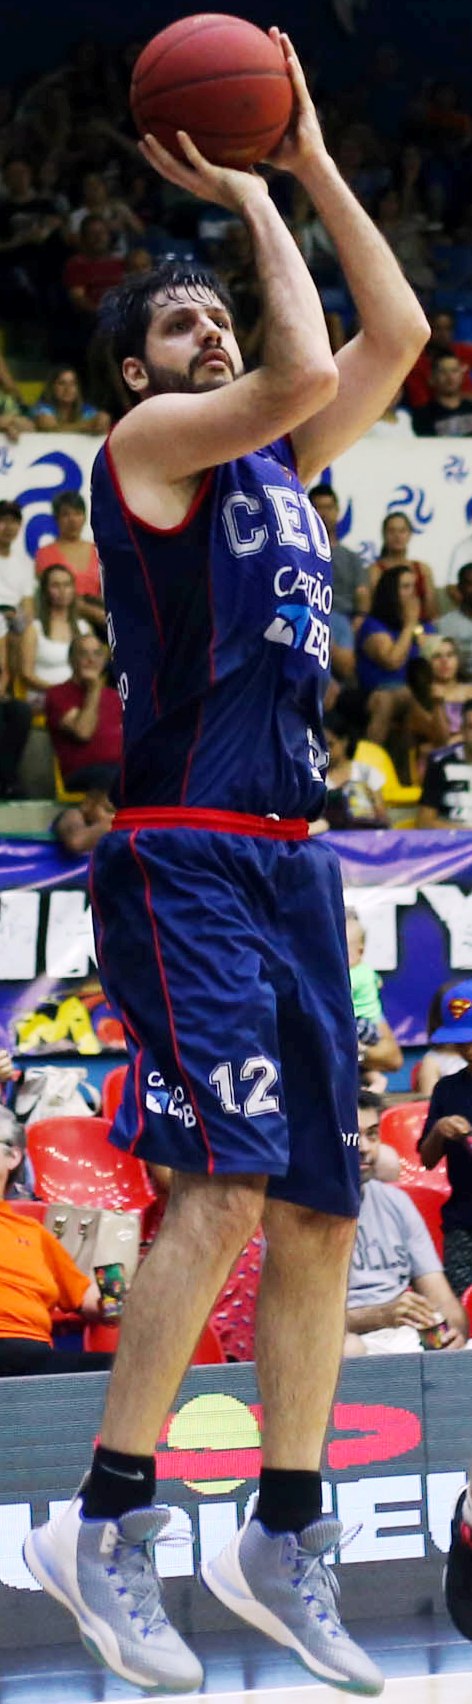 Guilherme Giovannoni será o quarto jogador na história do NBB CAIXA a chegar nos 1700 rebotes (Antônio Penedo/Mogi-Helbor)